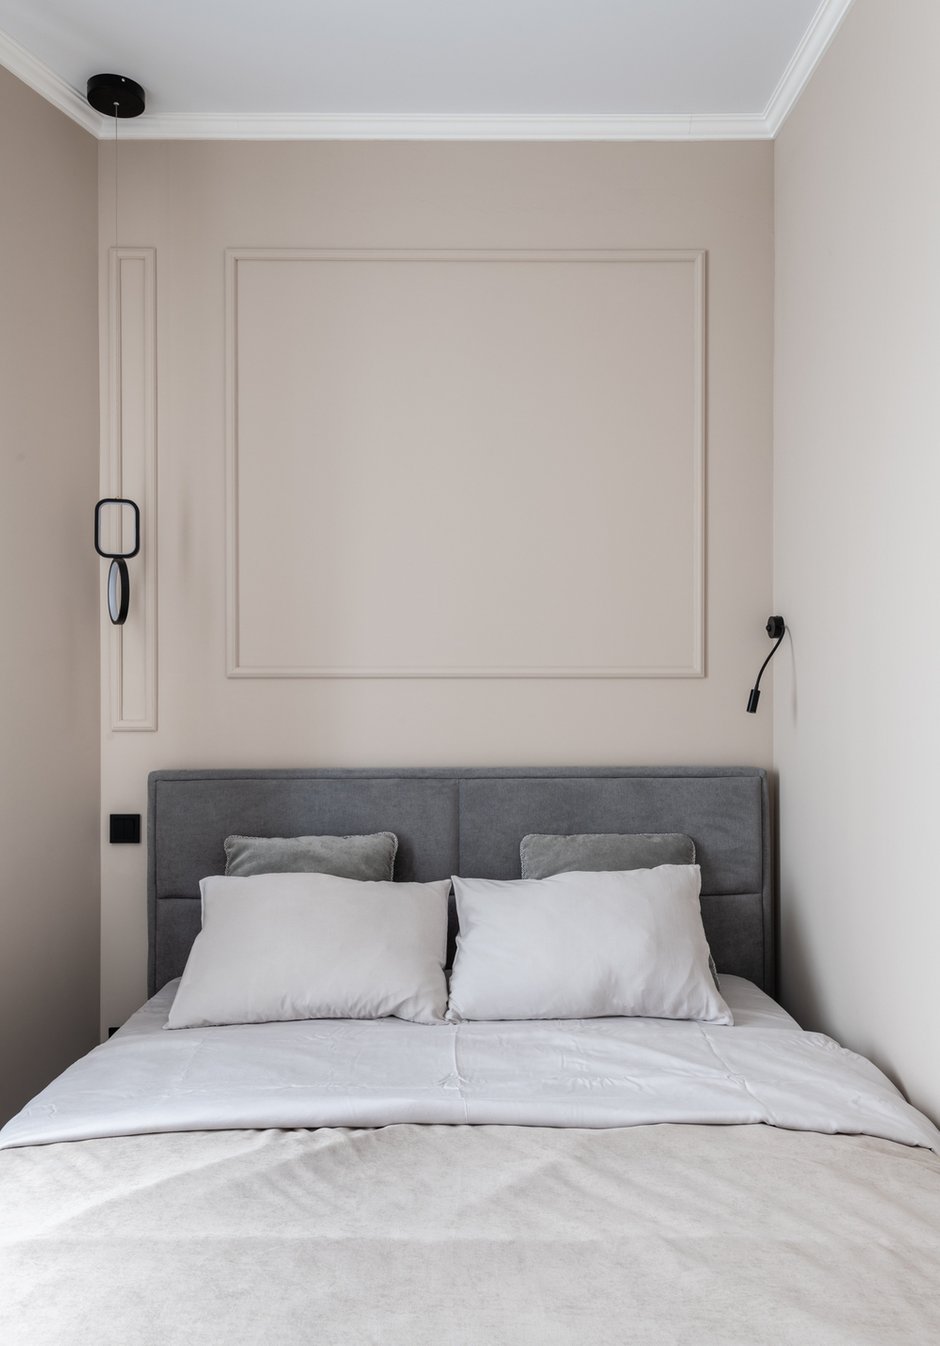 Дизайнер подчеркнула асимметрию комнаты раскладкой молдингов в изголовье и разными светильниками с двух сторон от кровати.